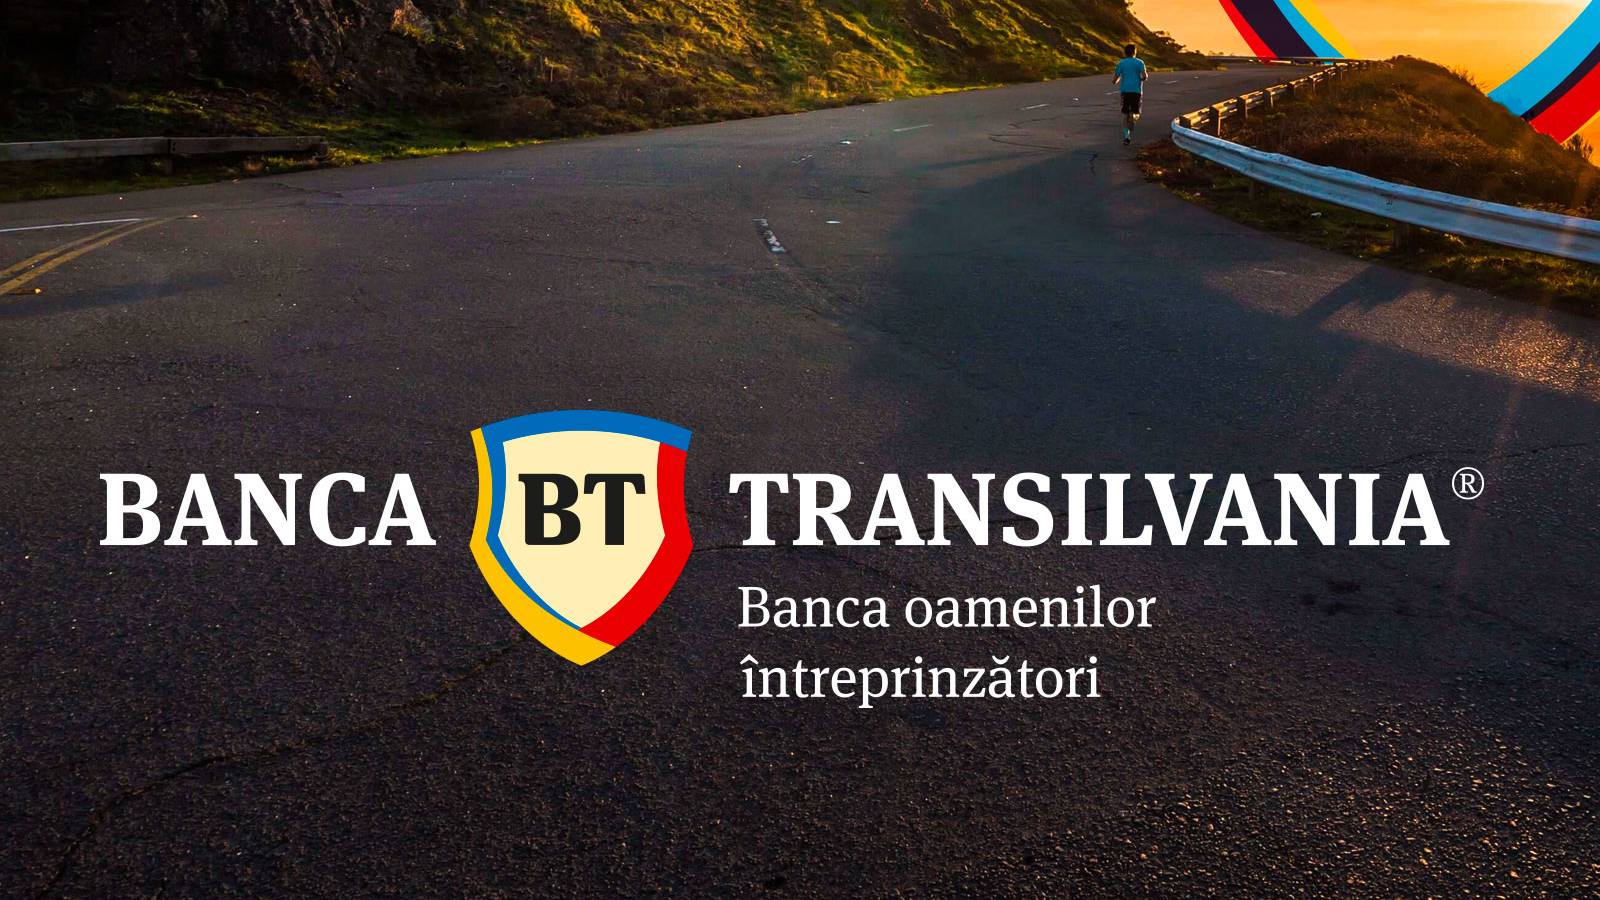 Otwarcie banku BANCA Transilvania